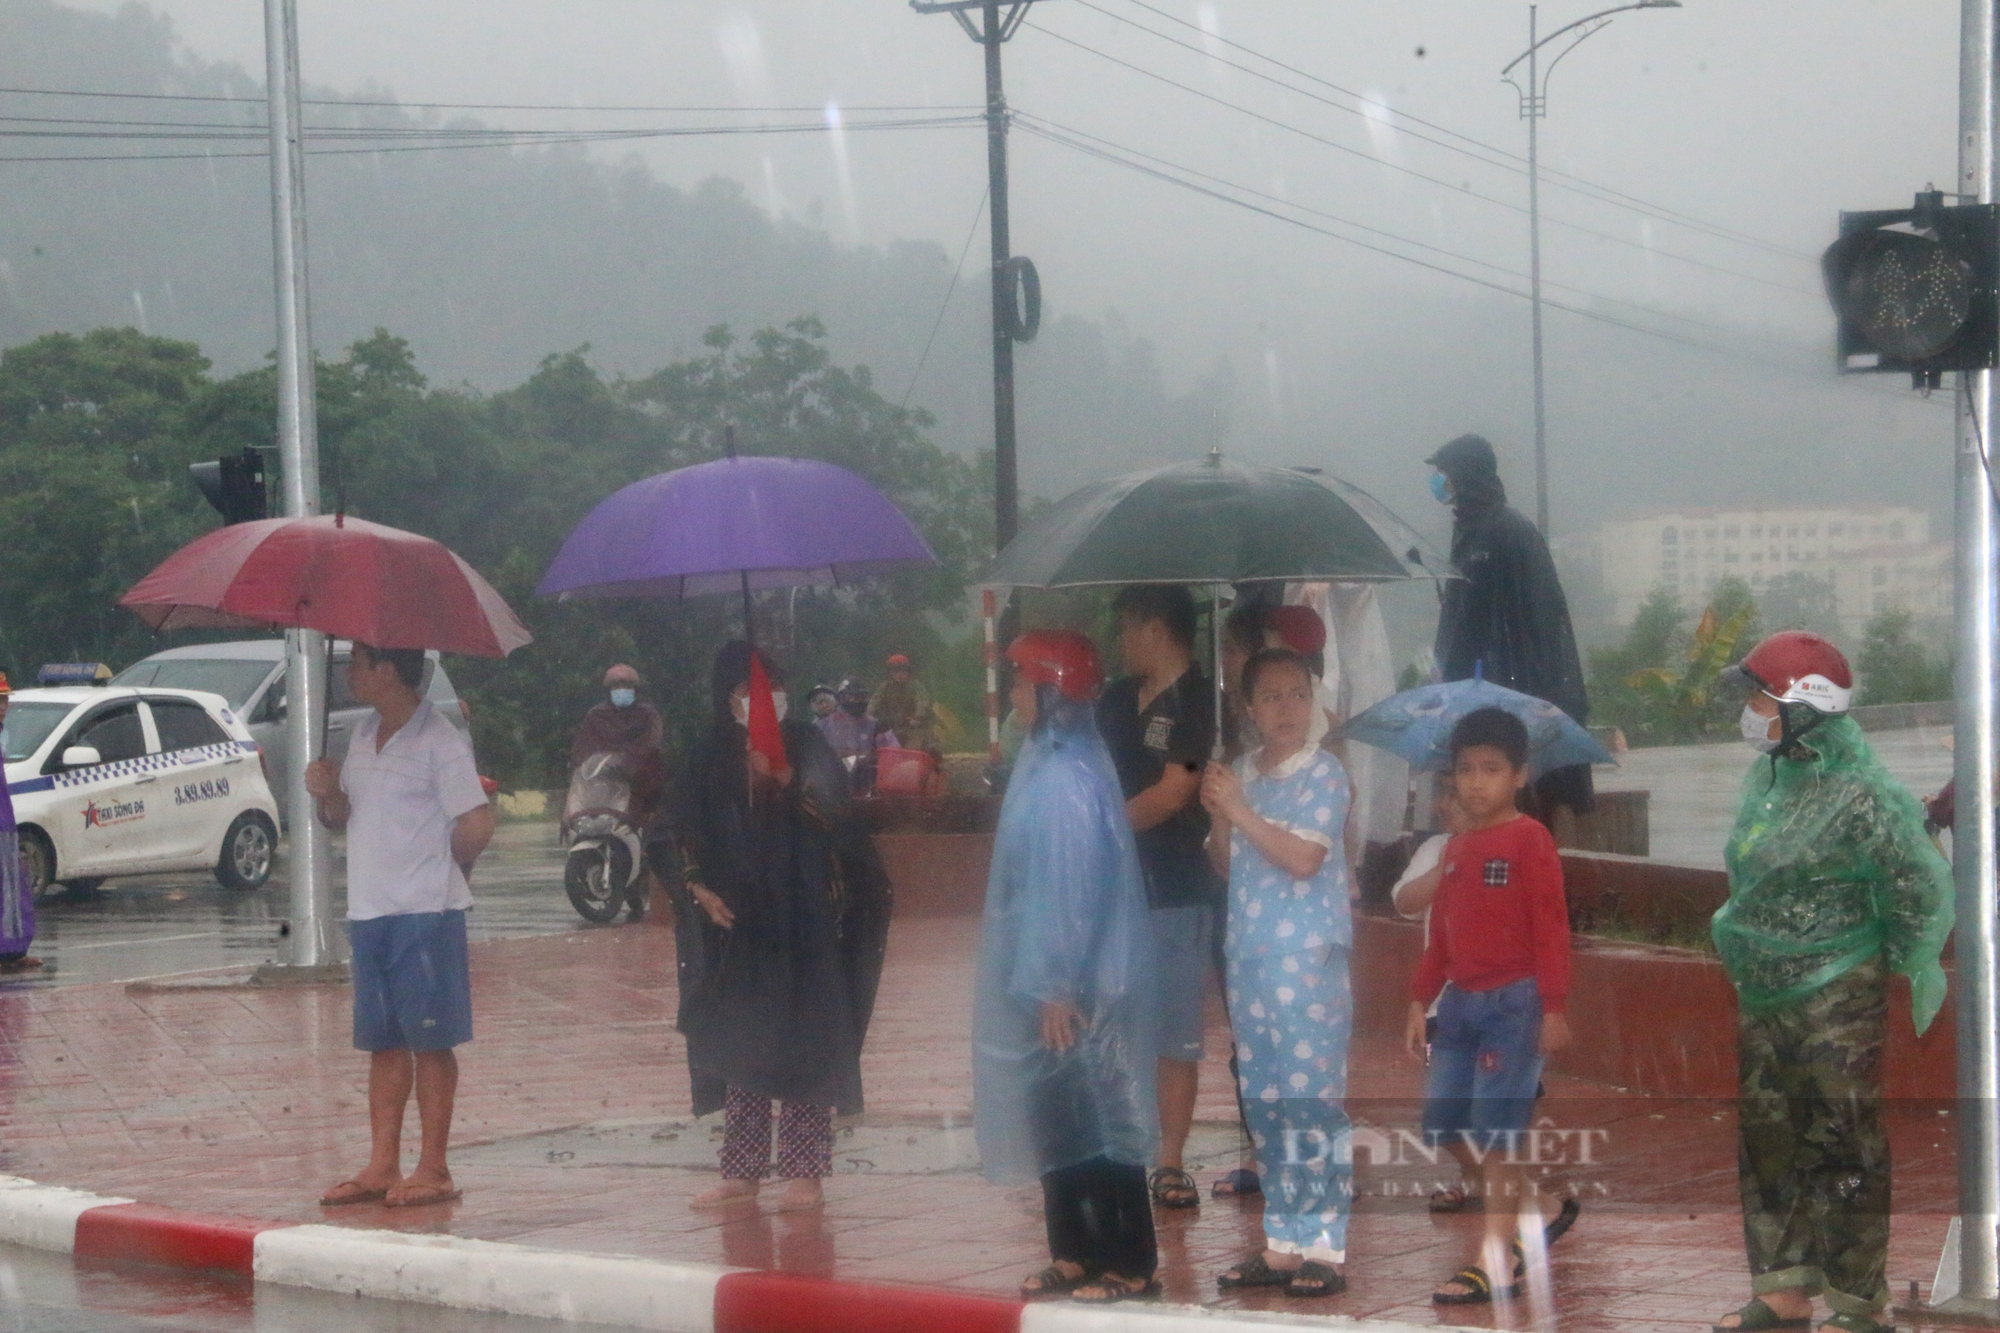  Chùm ảnh: Lực lượng CSGT Hoà Bình đầm mưa phân luồng giao thông phục vụ  - Ảnh 5.